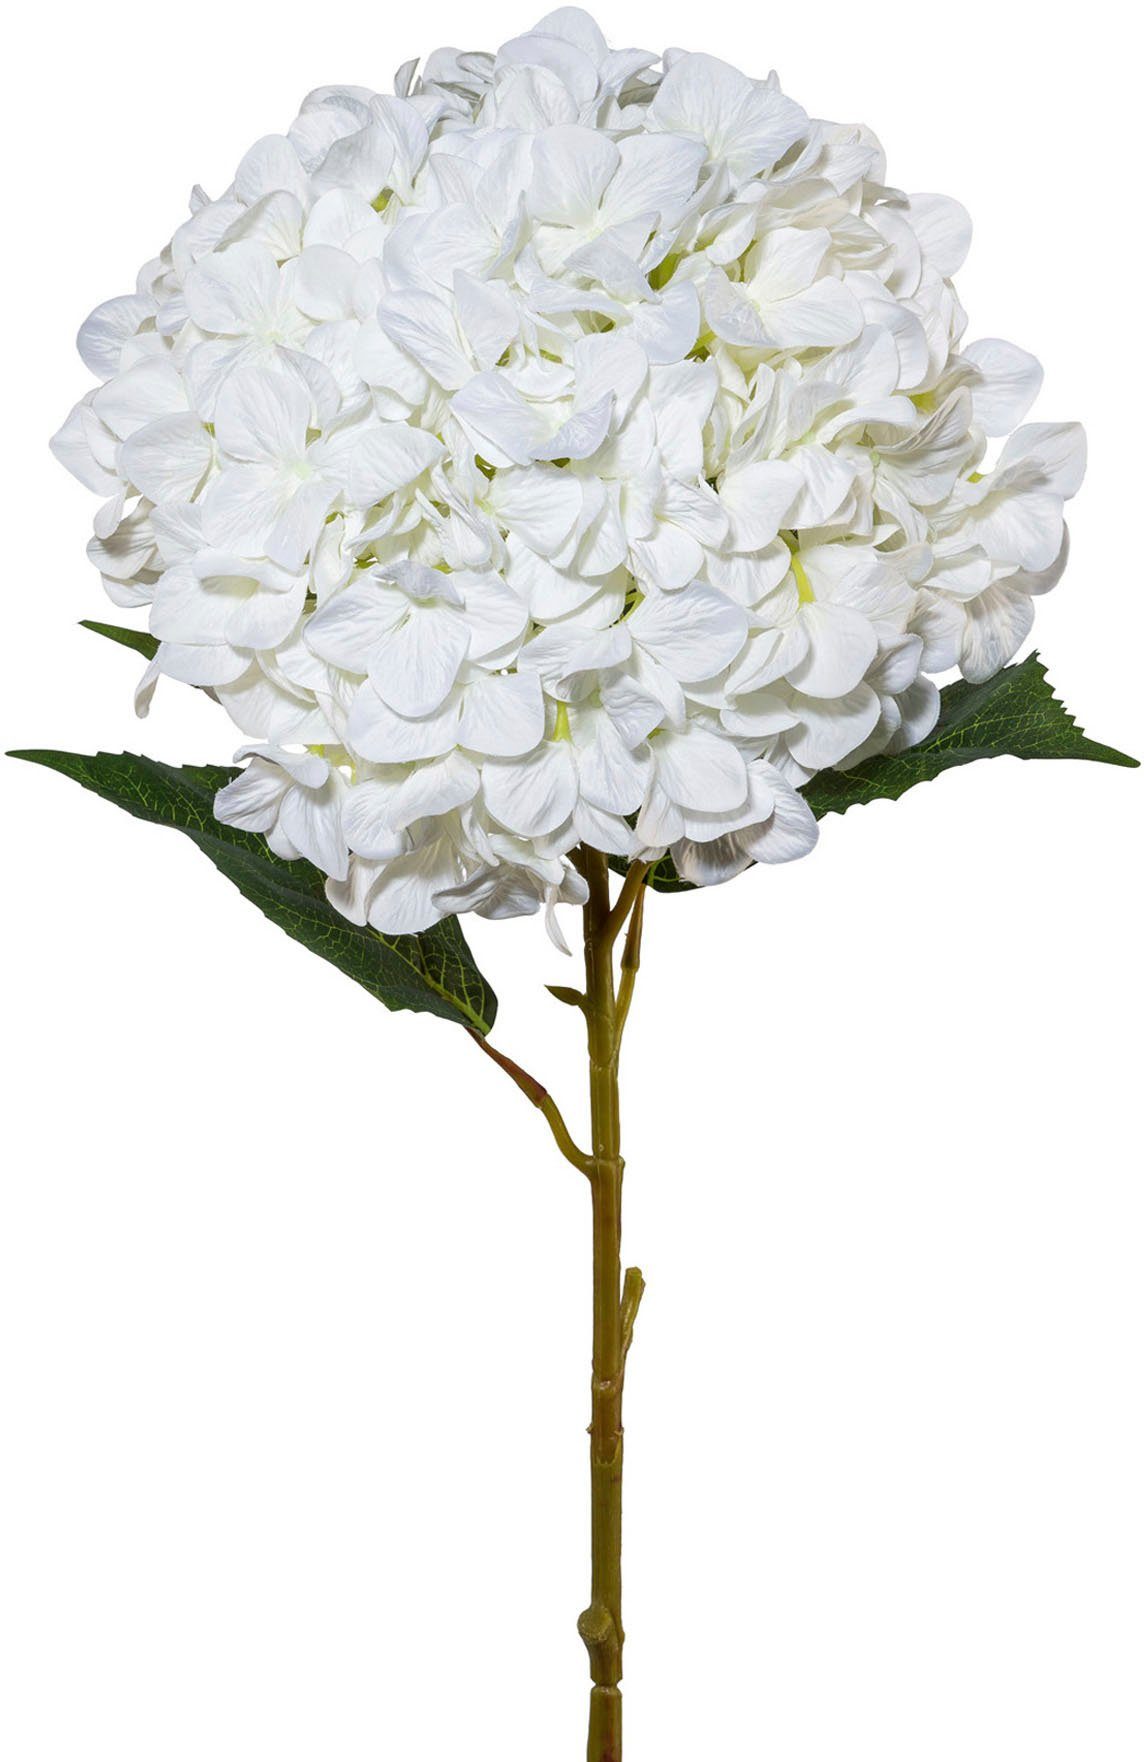 Hortensien 2er Bund weiss creme 29 cm Kunstblumen Seidenblumen weiß Hydrangea 